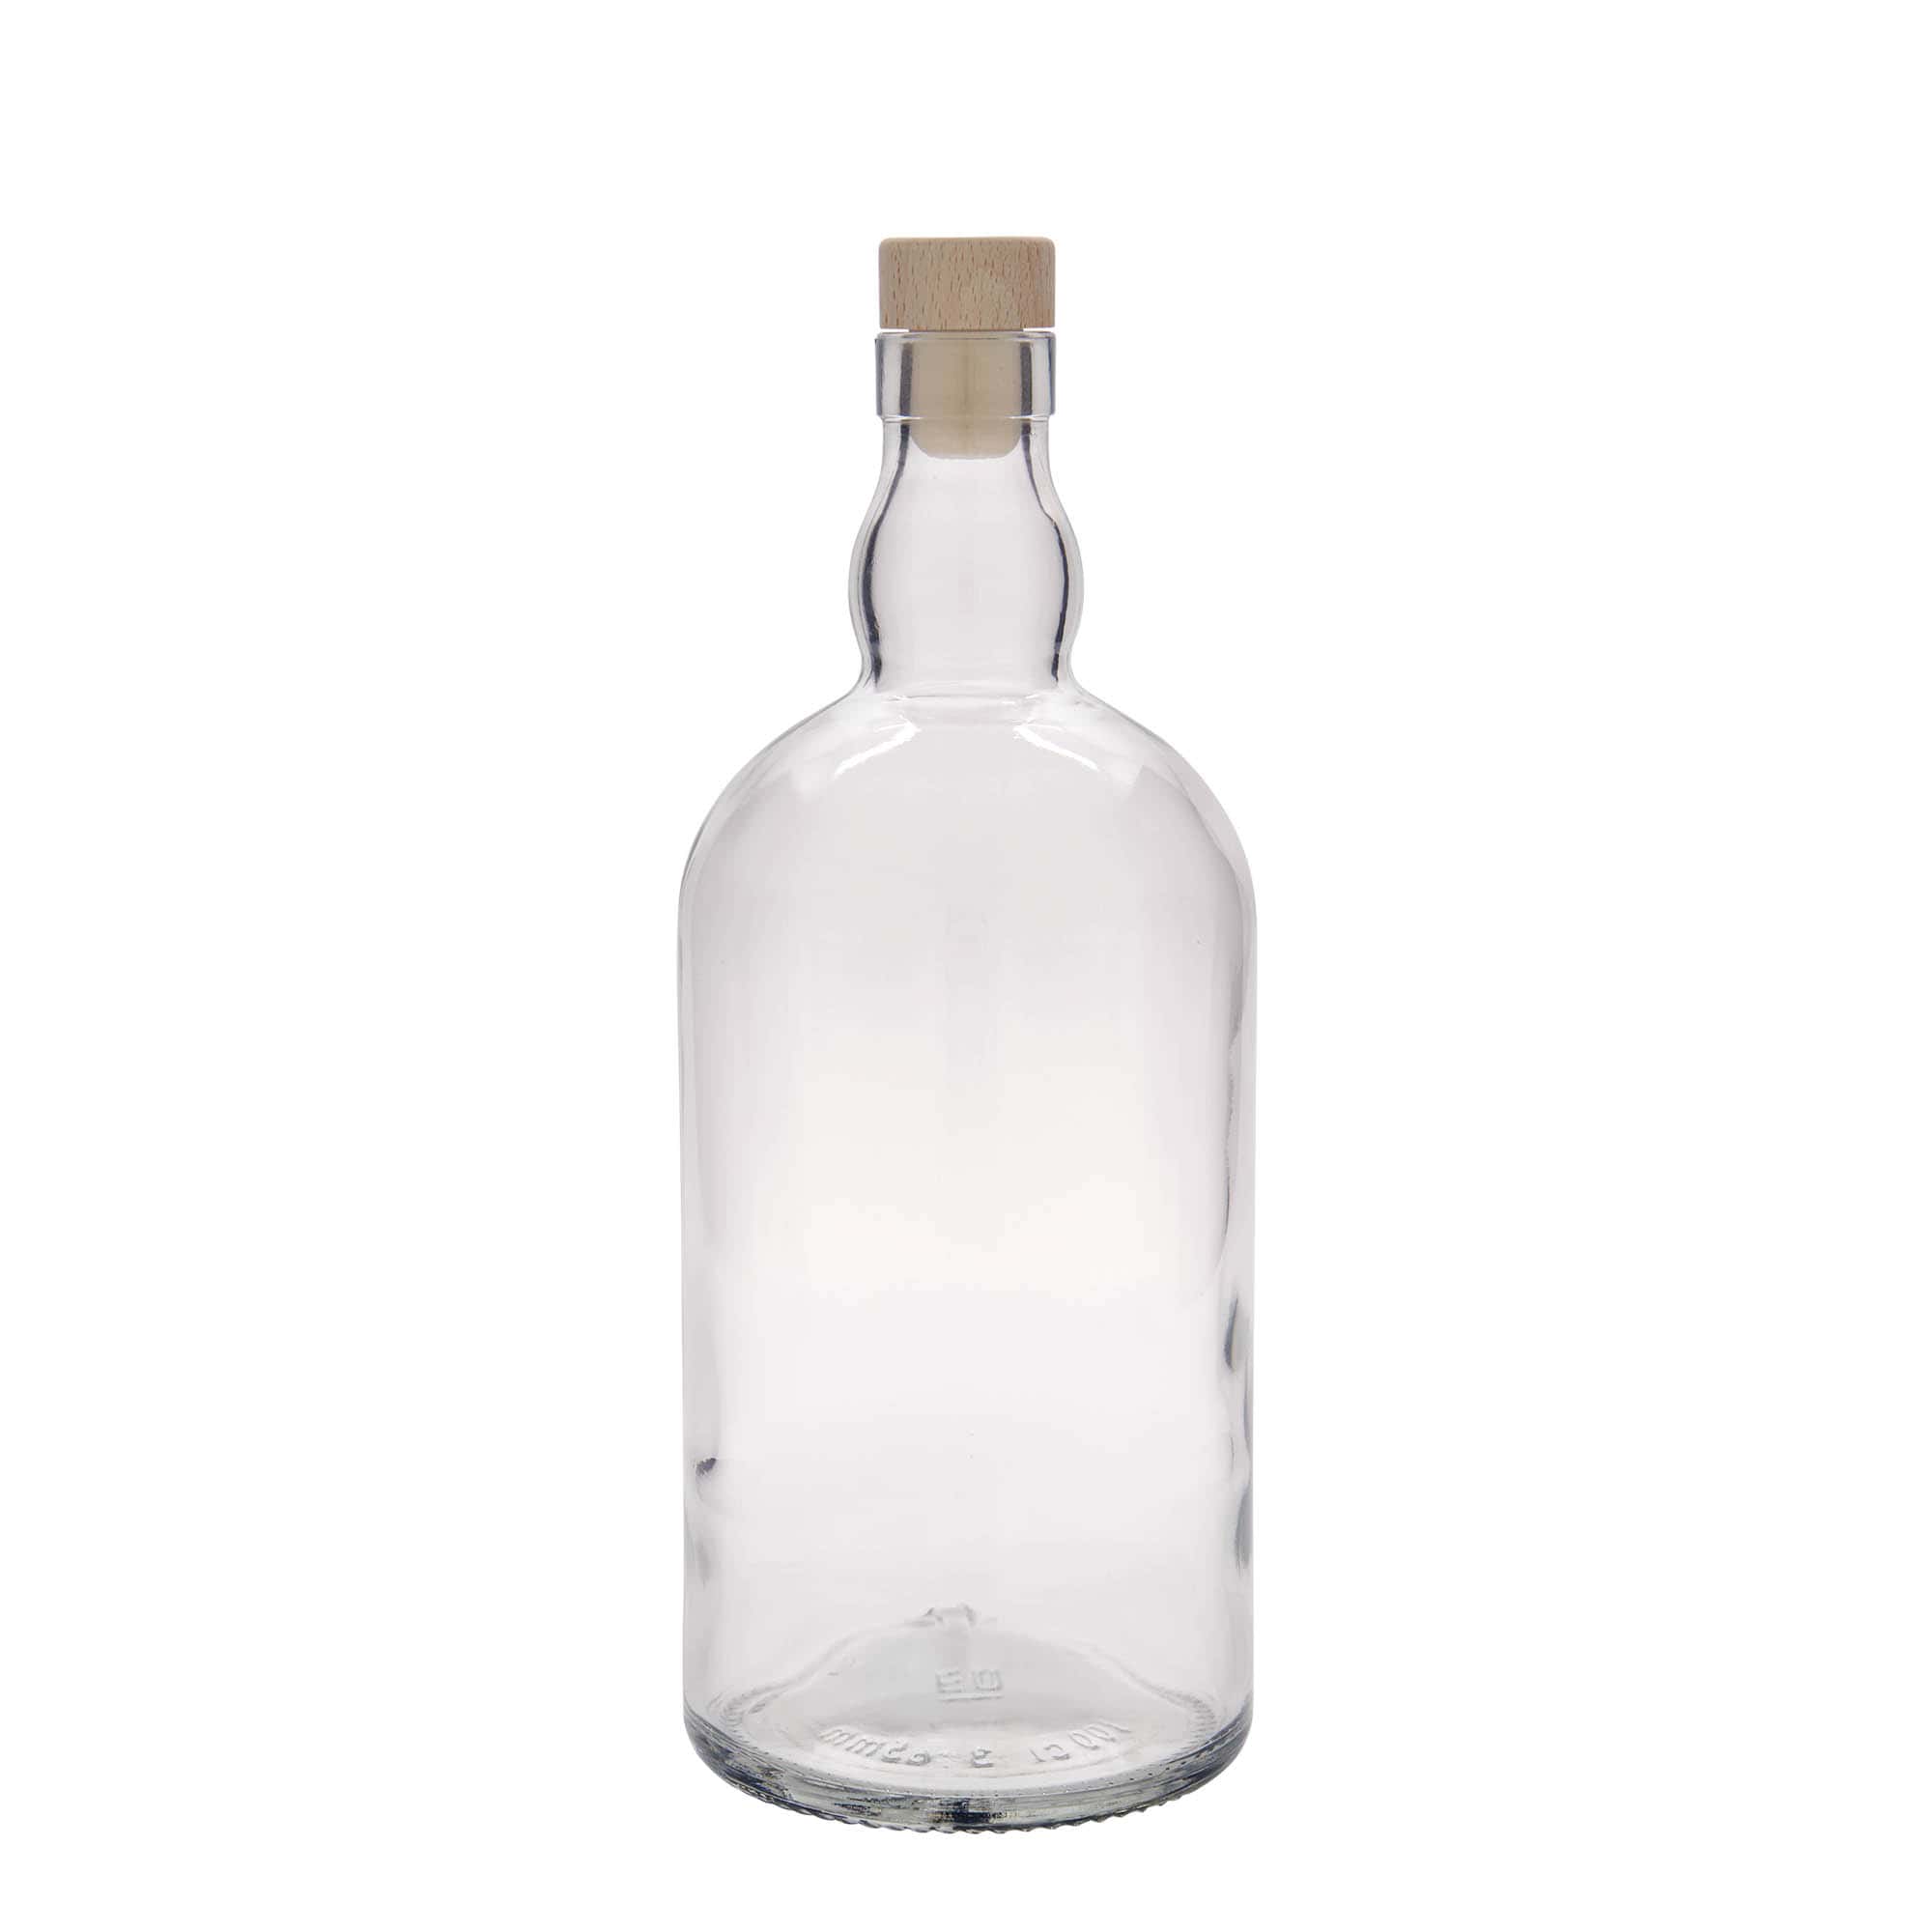 1000 ml glass bottle 'Aberdeen', closure: cork